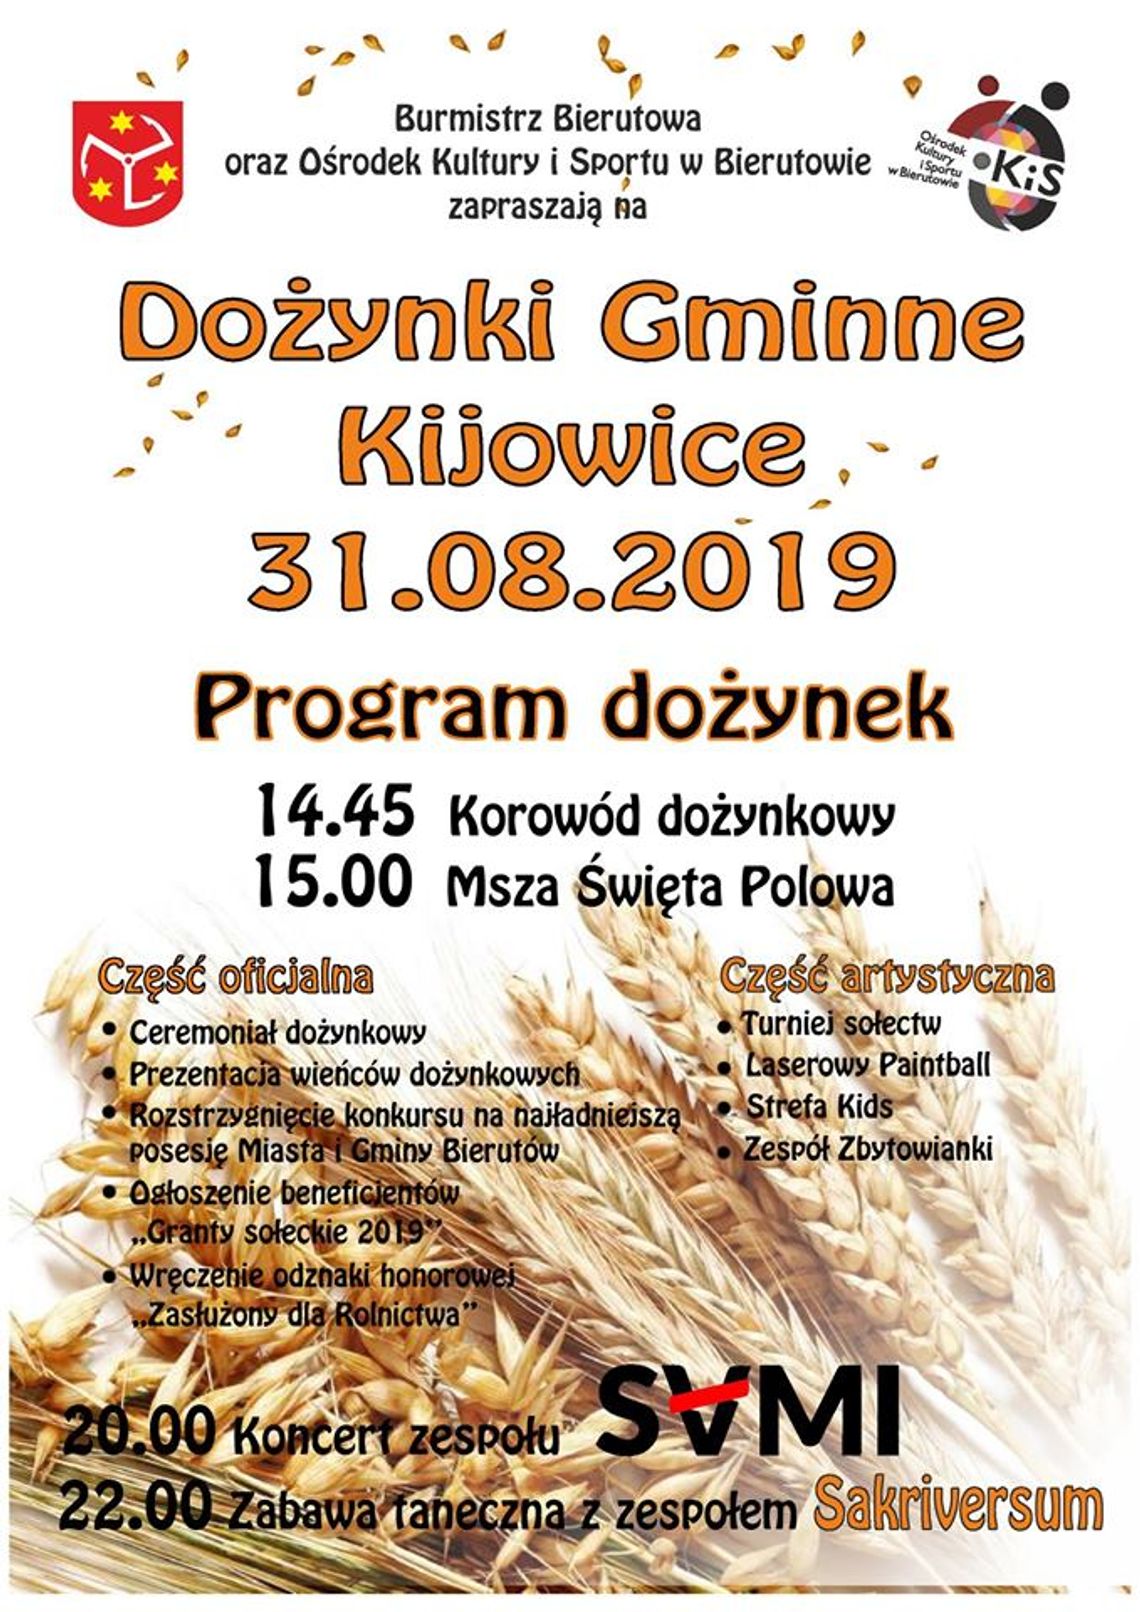 Dożynki Gminne Kijowice 2019